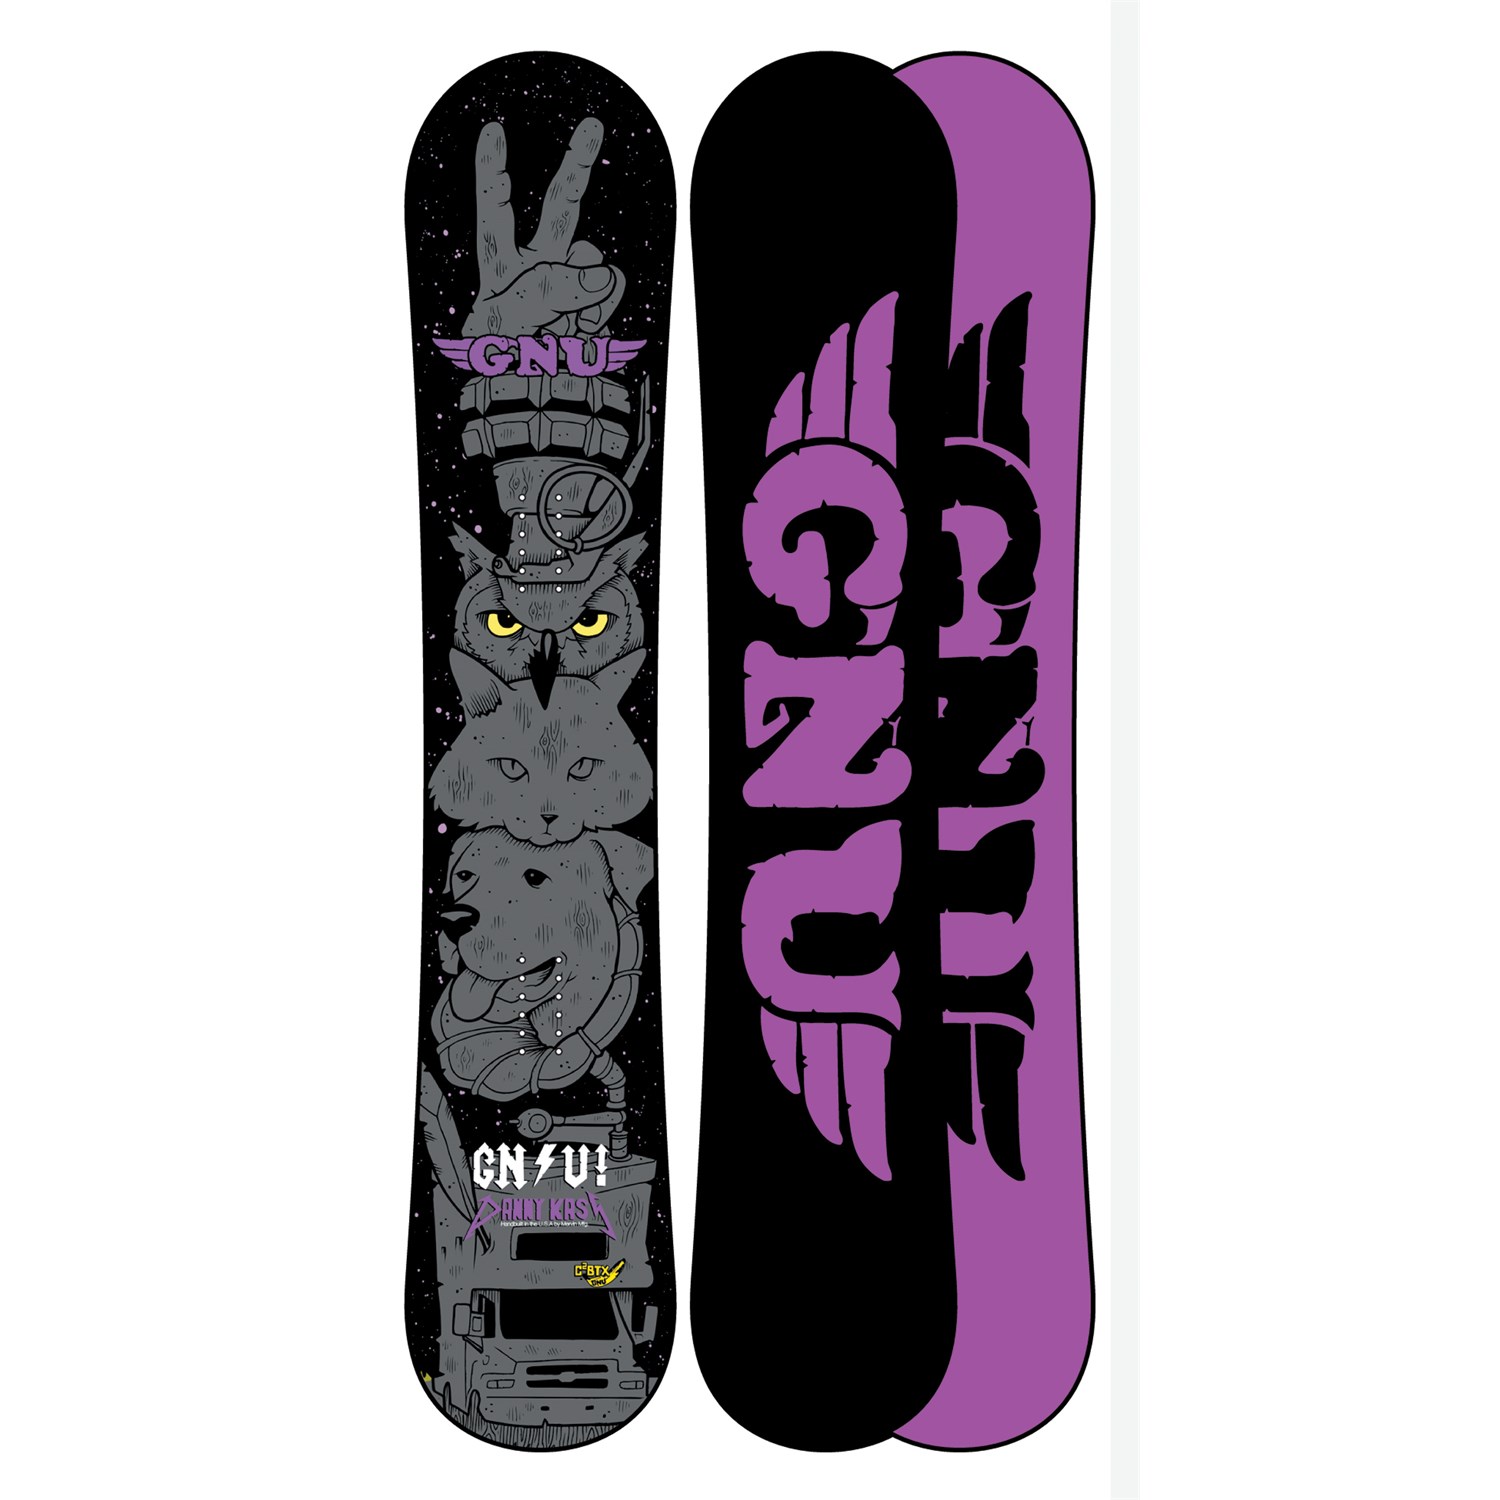 GNU snowboard skateboard Danny Kass 2001 Reaper Sticker Flawless New Old Stock 